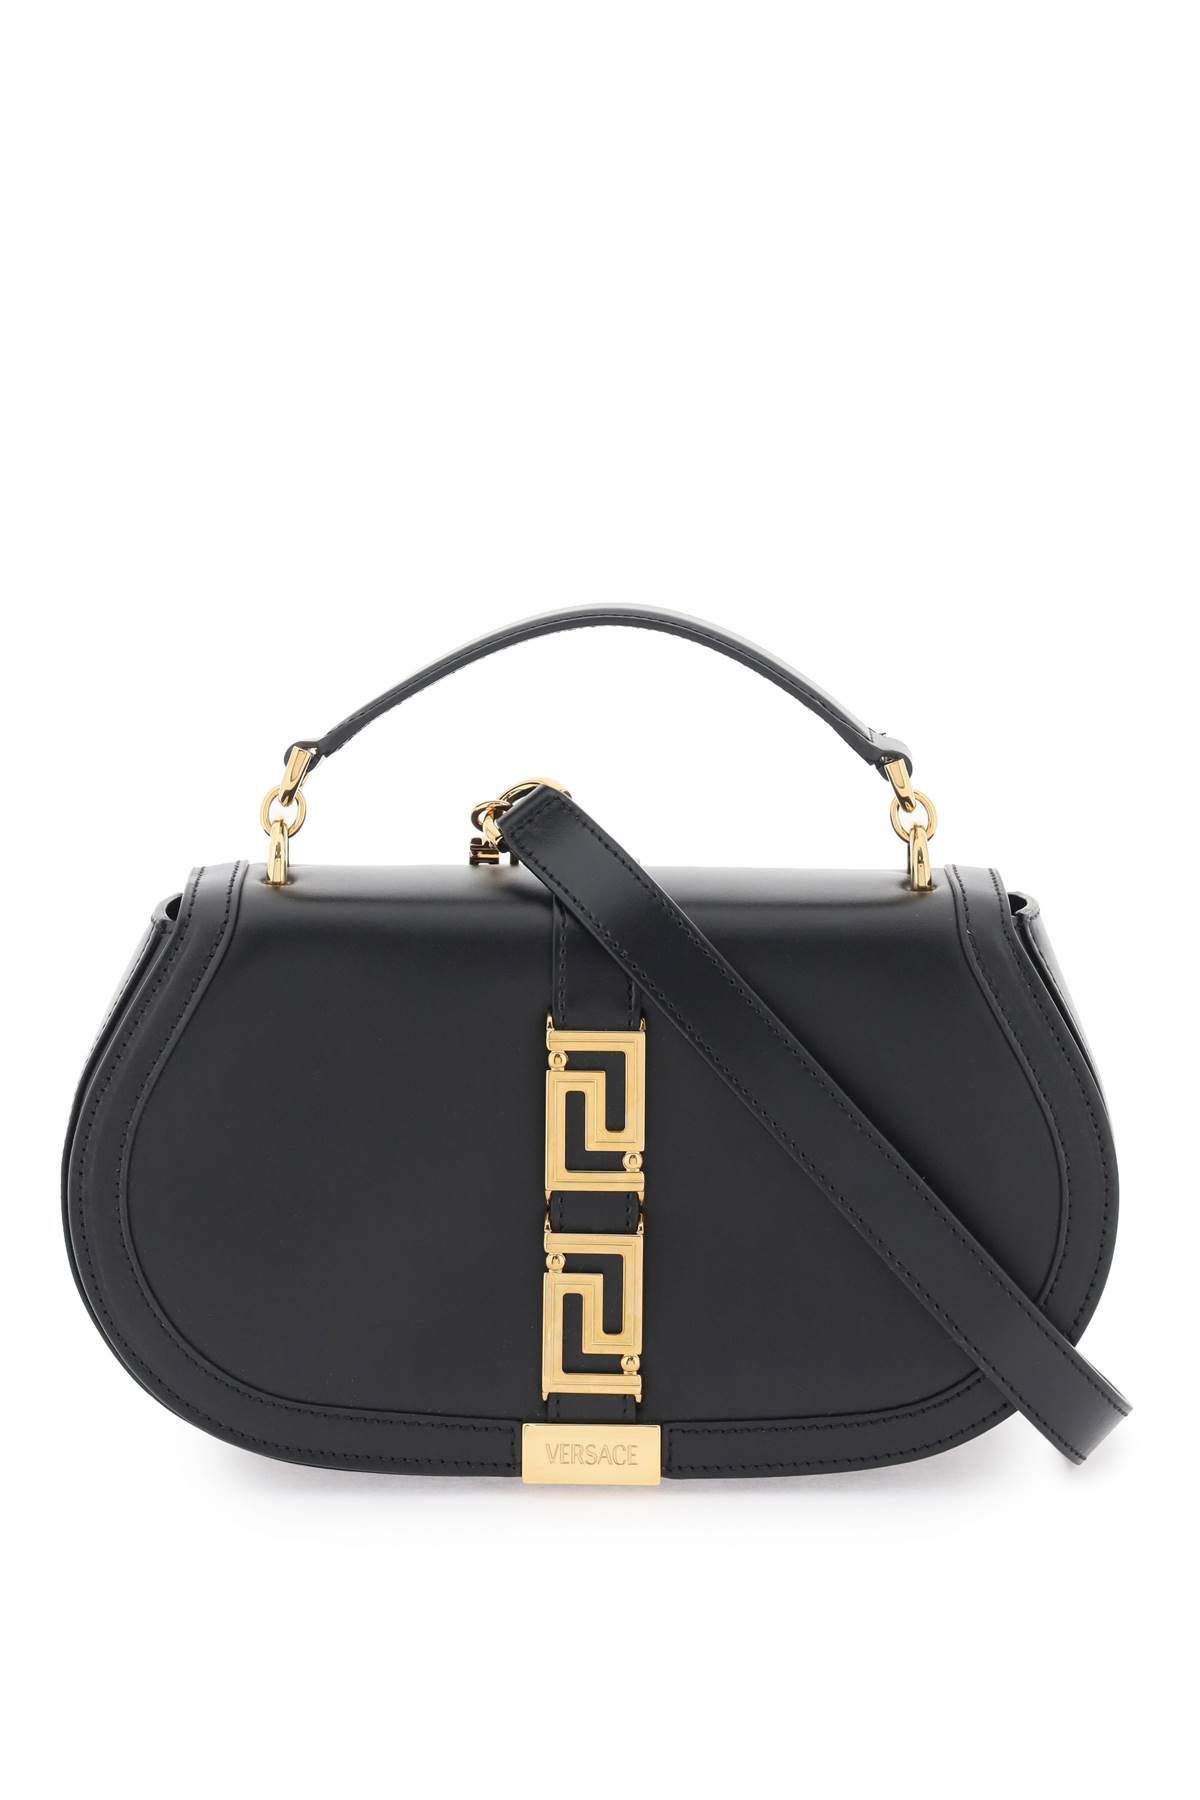 Versace 'greca Goddess' Shoulder Bag In Black